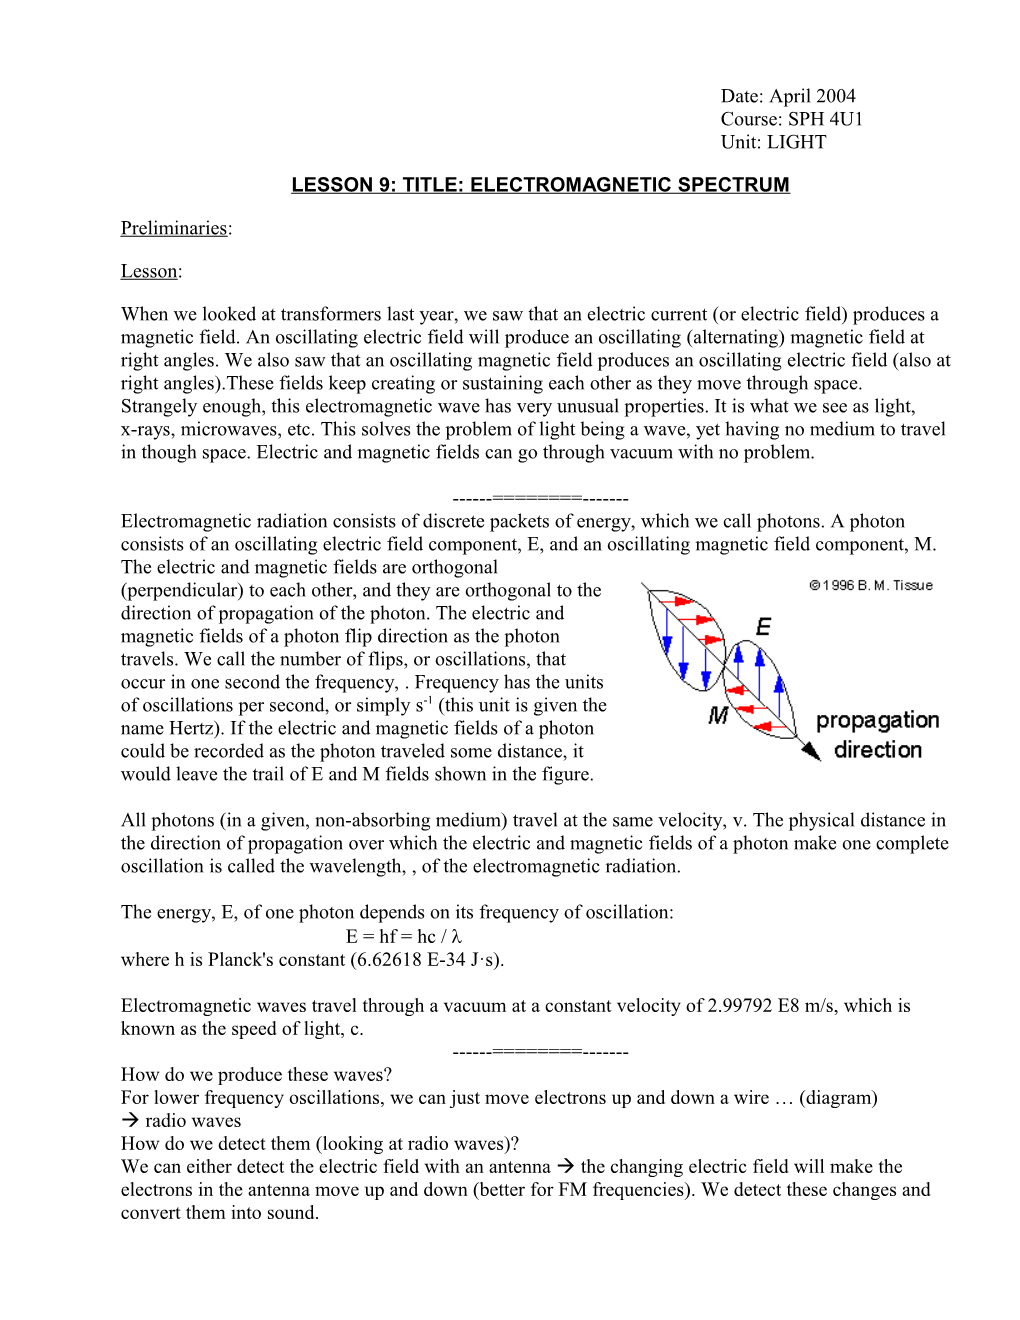 Lesson 9: Title: Electromagnetic Spectrum